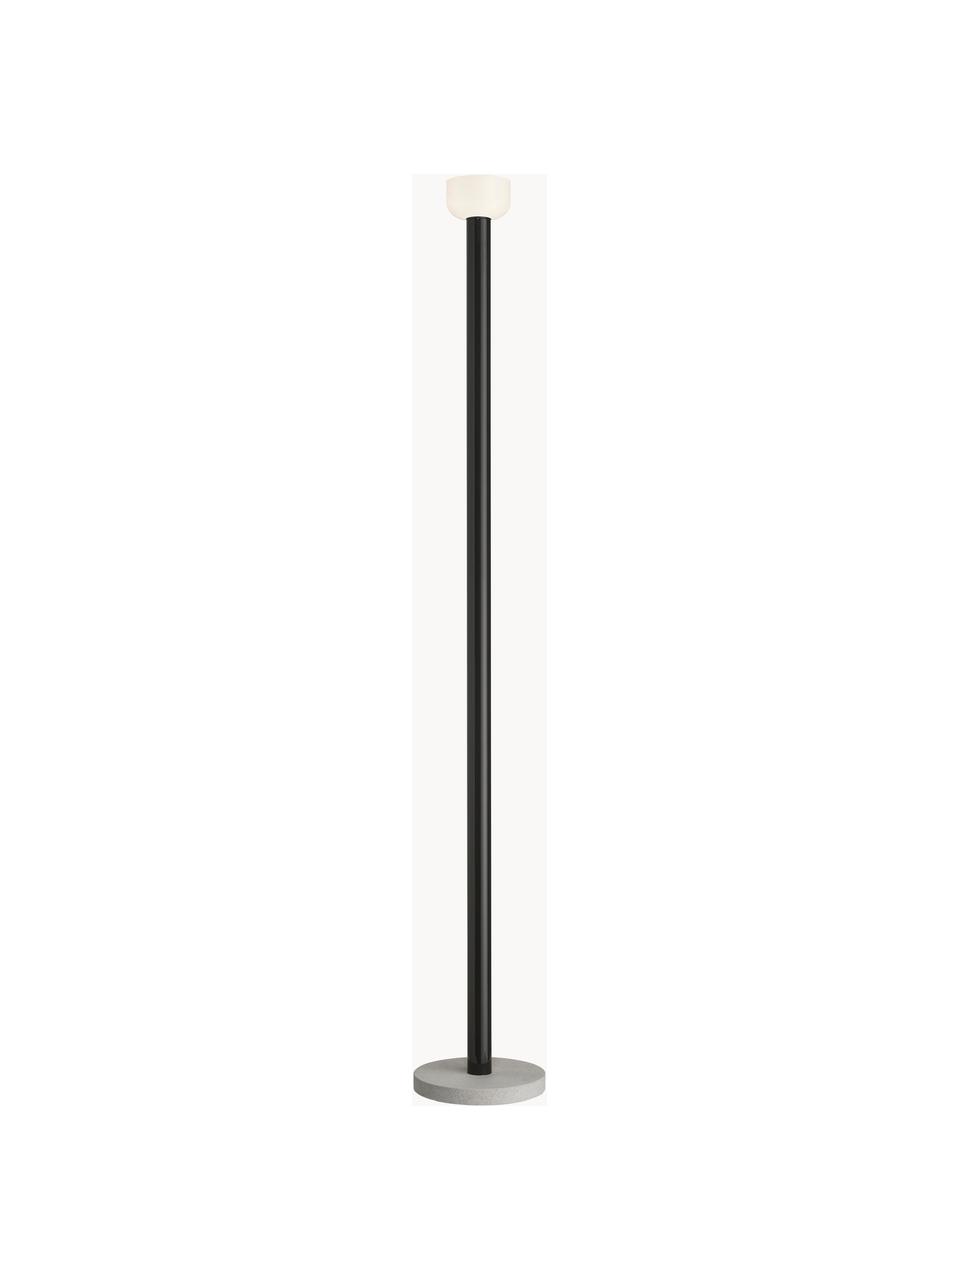 Lampa podłogowa LED z funkcją przyciemniania Bellhop, Czarny, W 178 cm